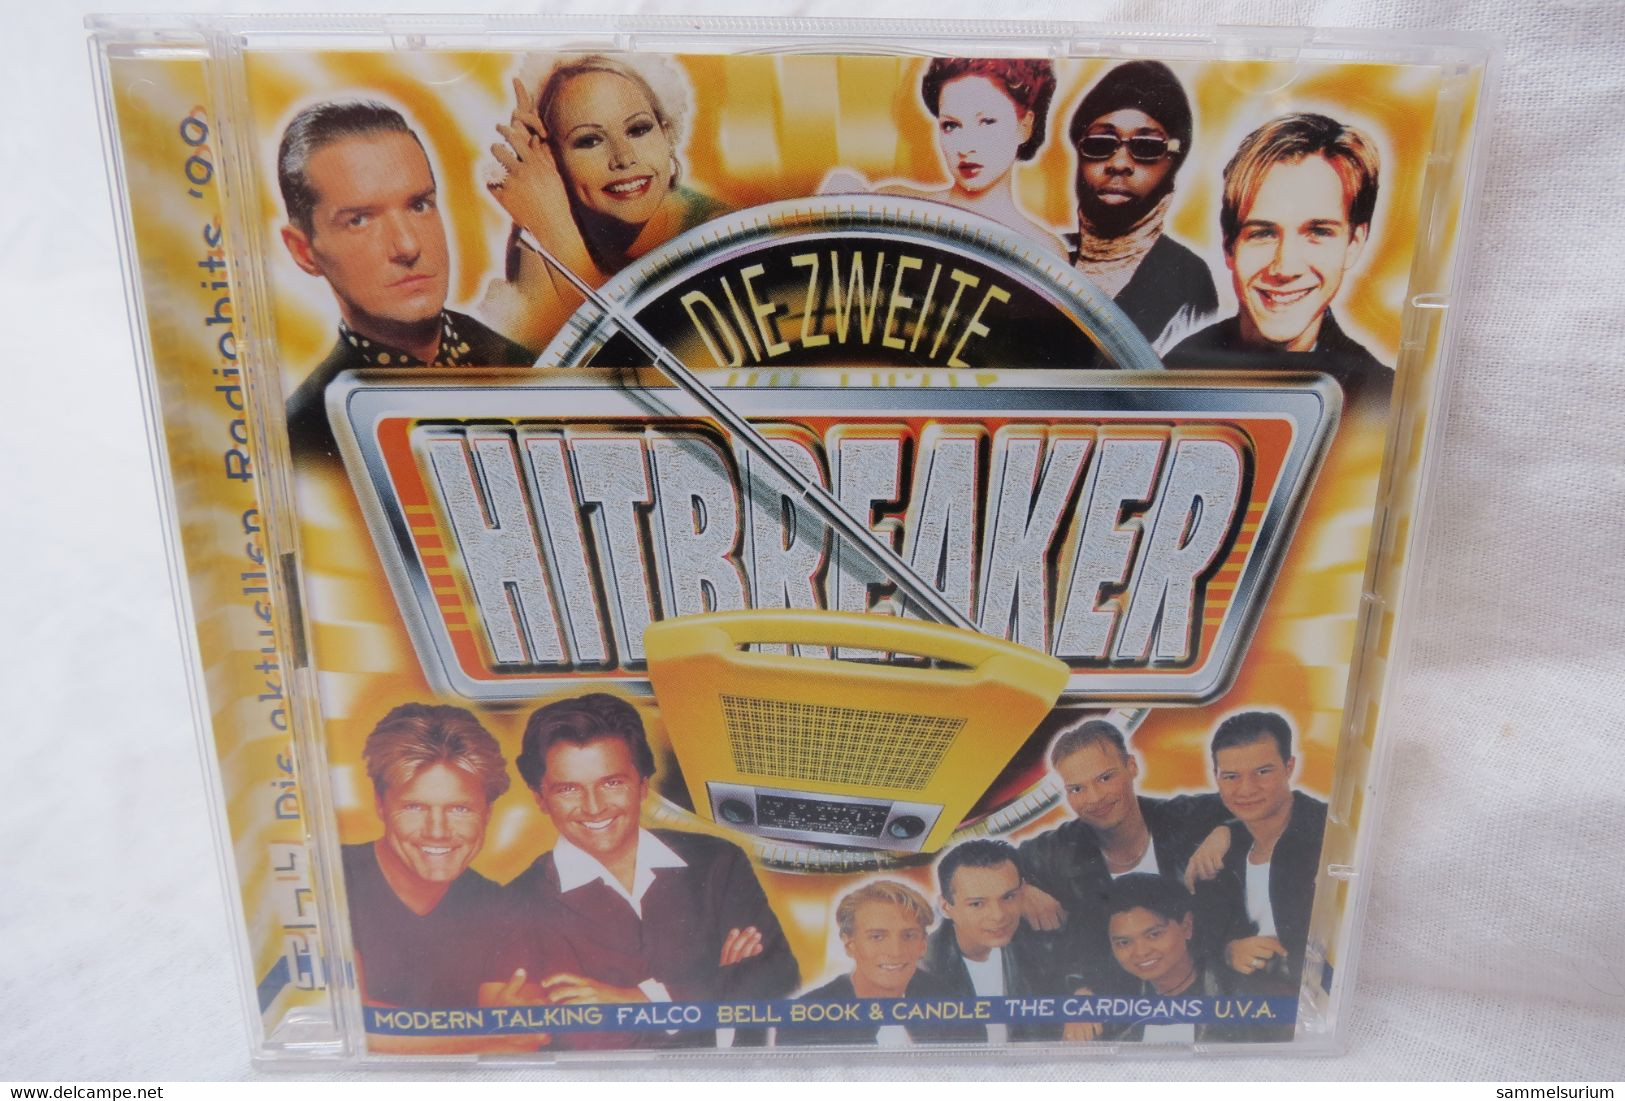 2 CDs "Die Zweite Hitbreaker" Die Aktuellen Radiohits '99 - Compilaties